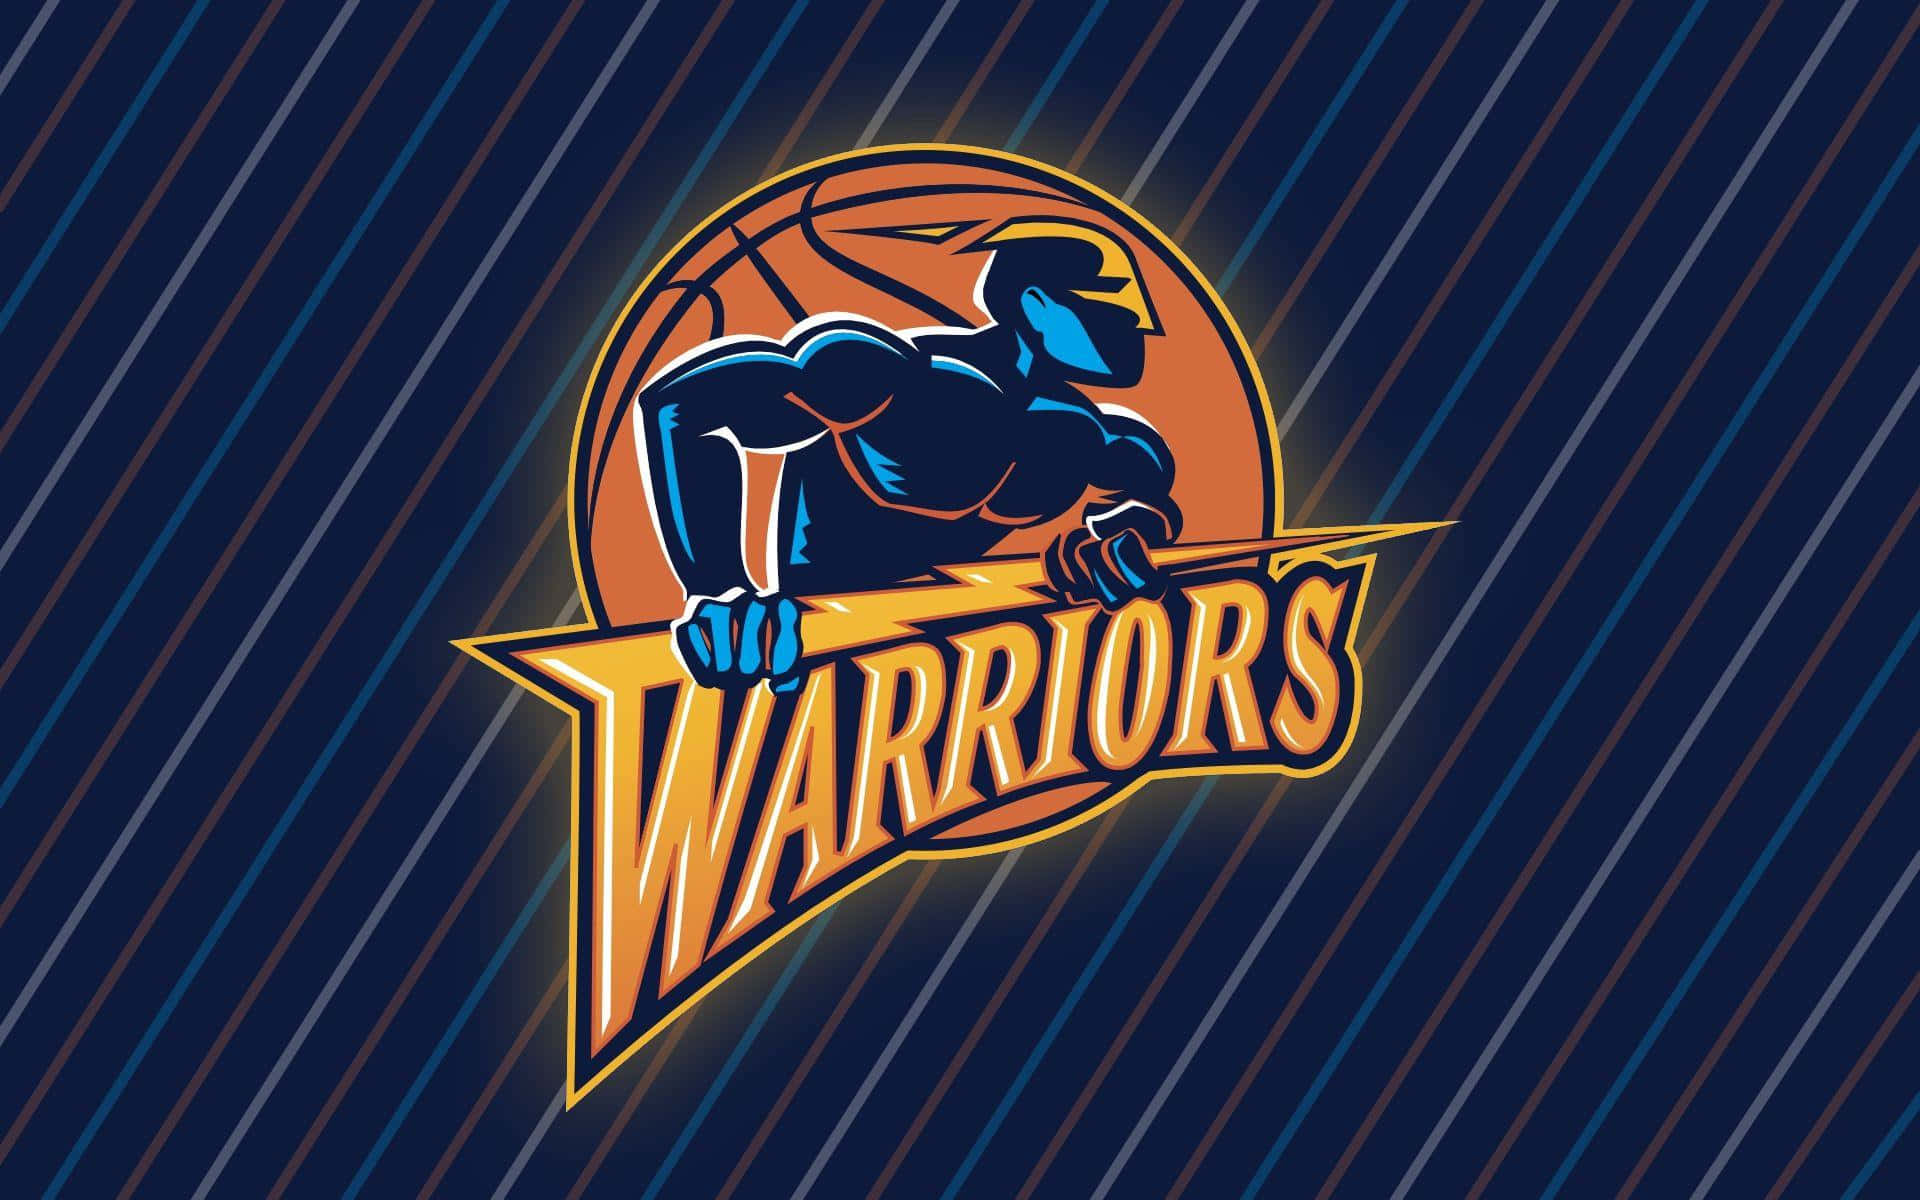 Warriors Basketball Team Logo Wallpaper